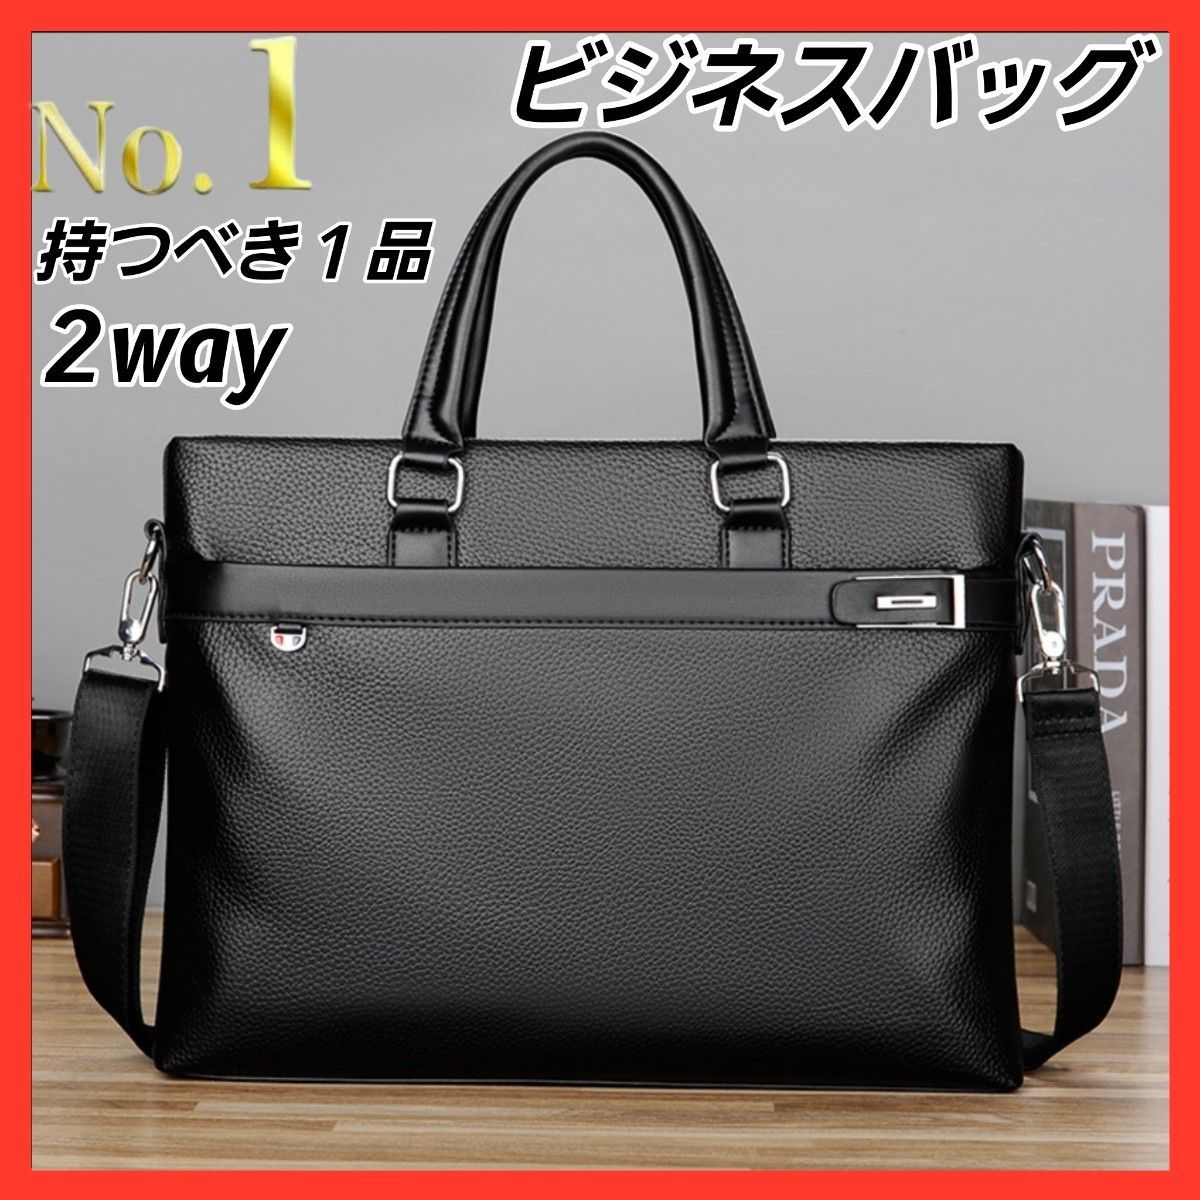 おトク】 極美品□ポロラルフローレン ビジネスバッグ 2way 現行モデル